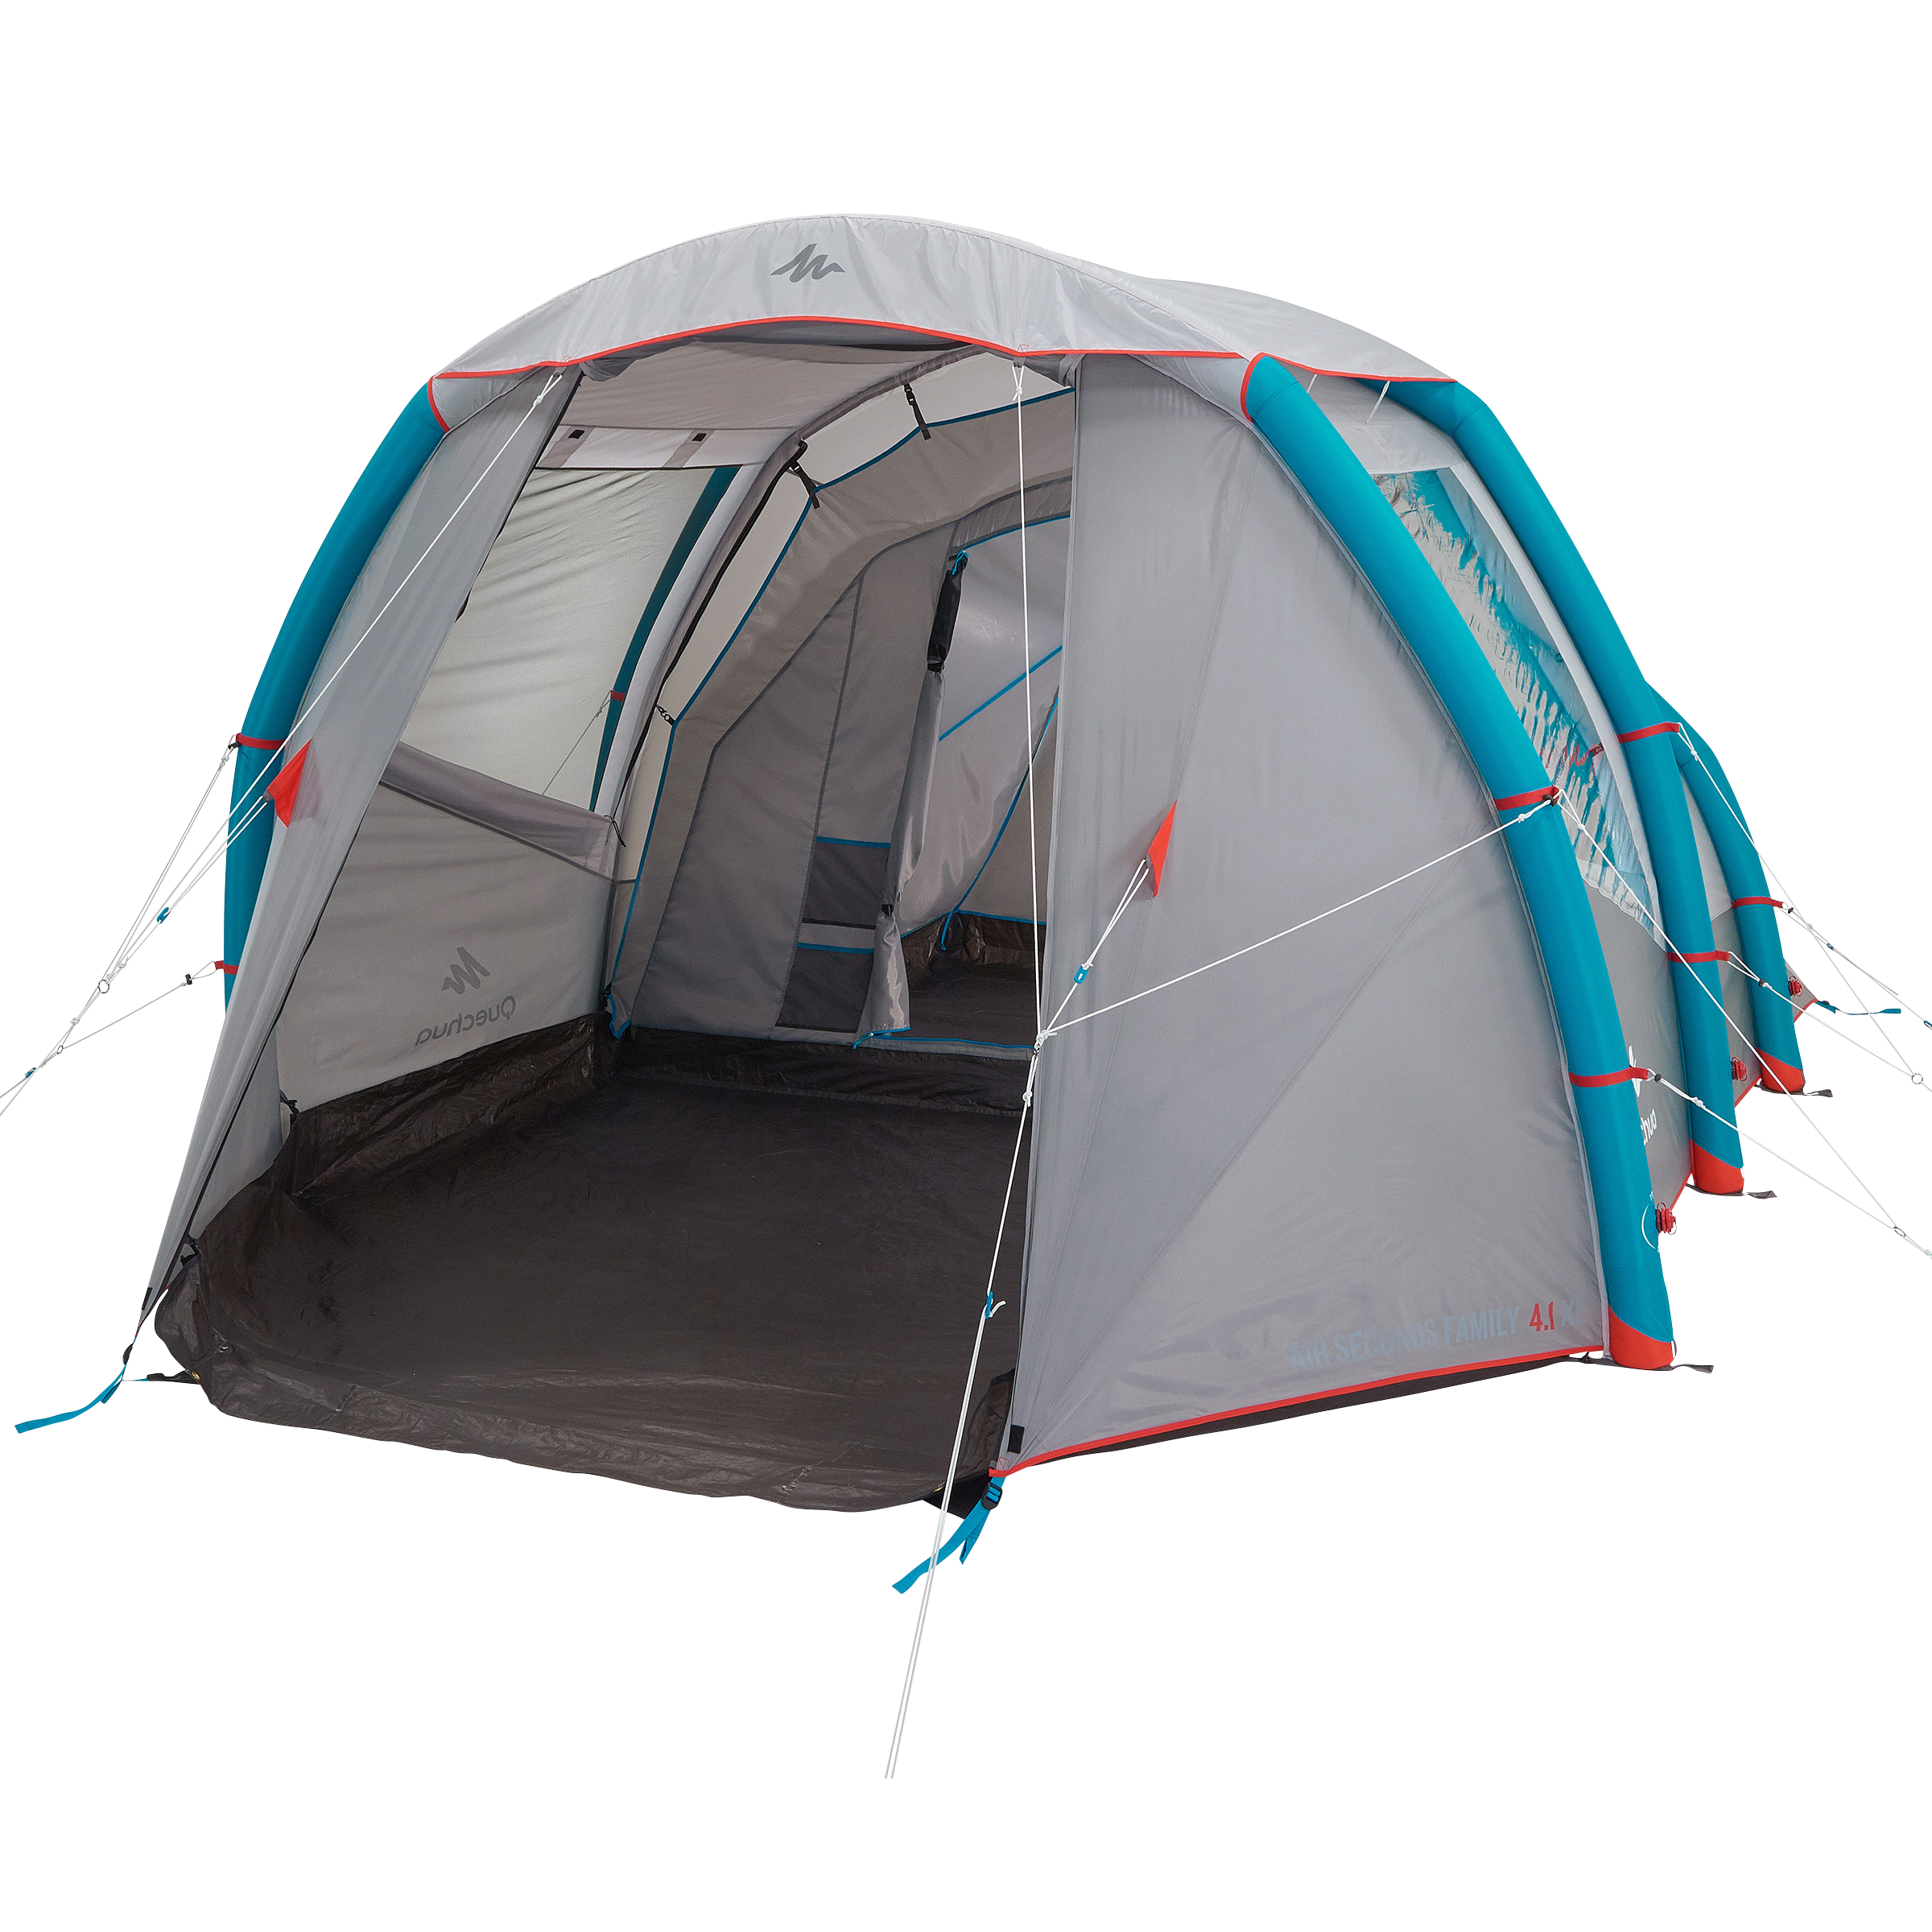 Décathlon lance une tente de toit gonflable pour van, qu'en penser ?